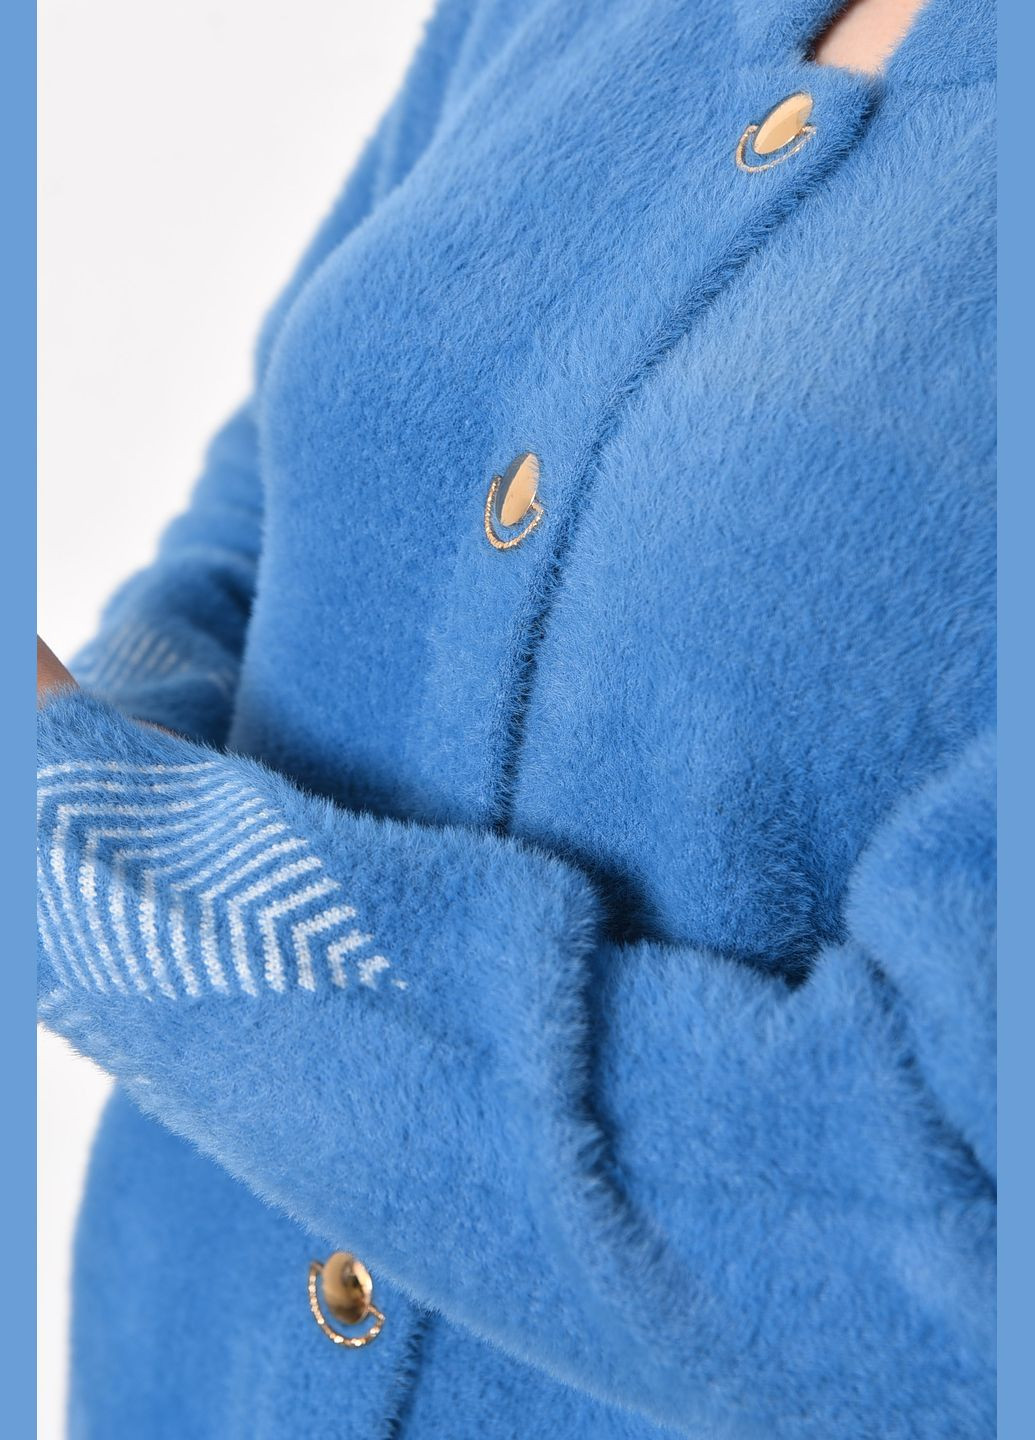 Голубой демисезонный кардиган женский альпака голубого цвета пуловер Let's Shop